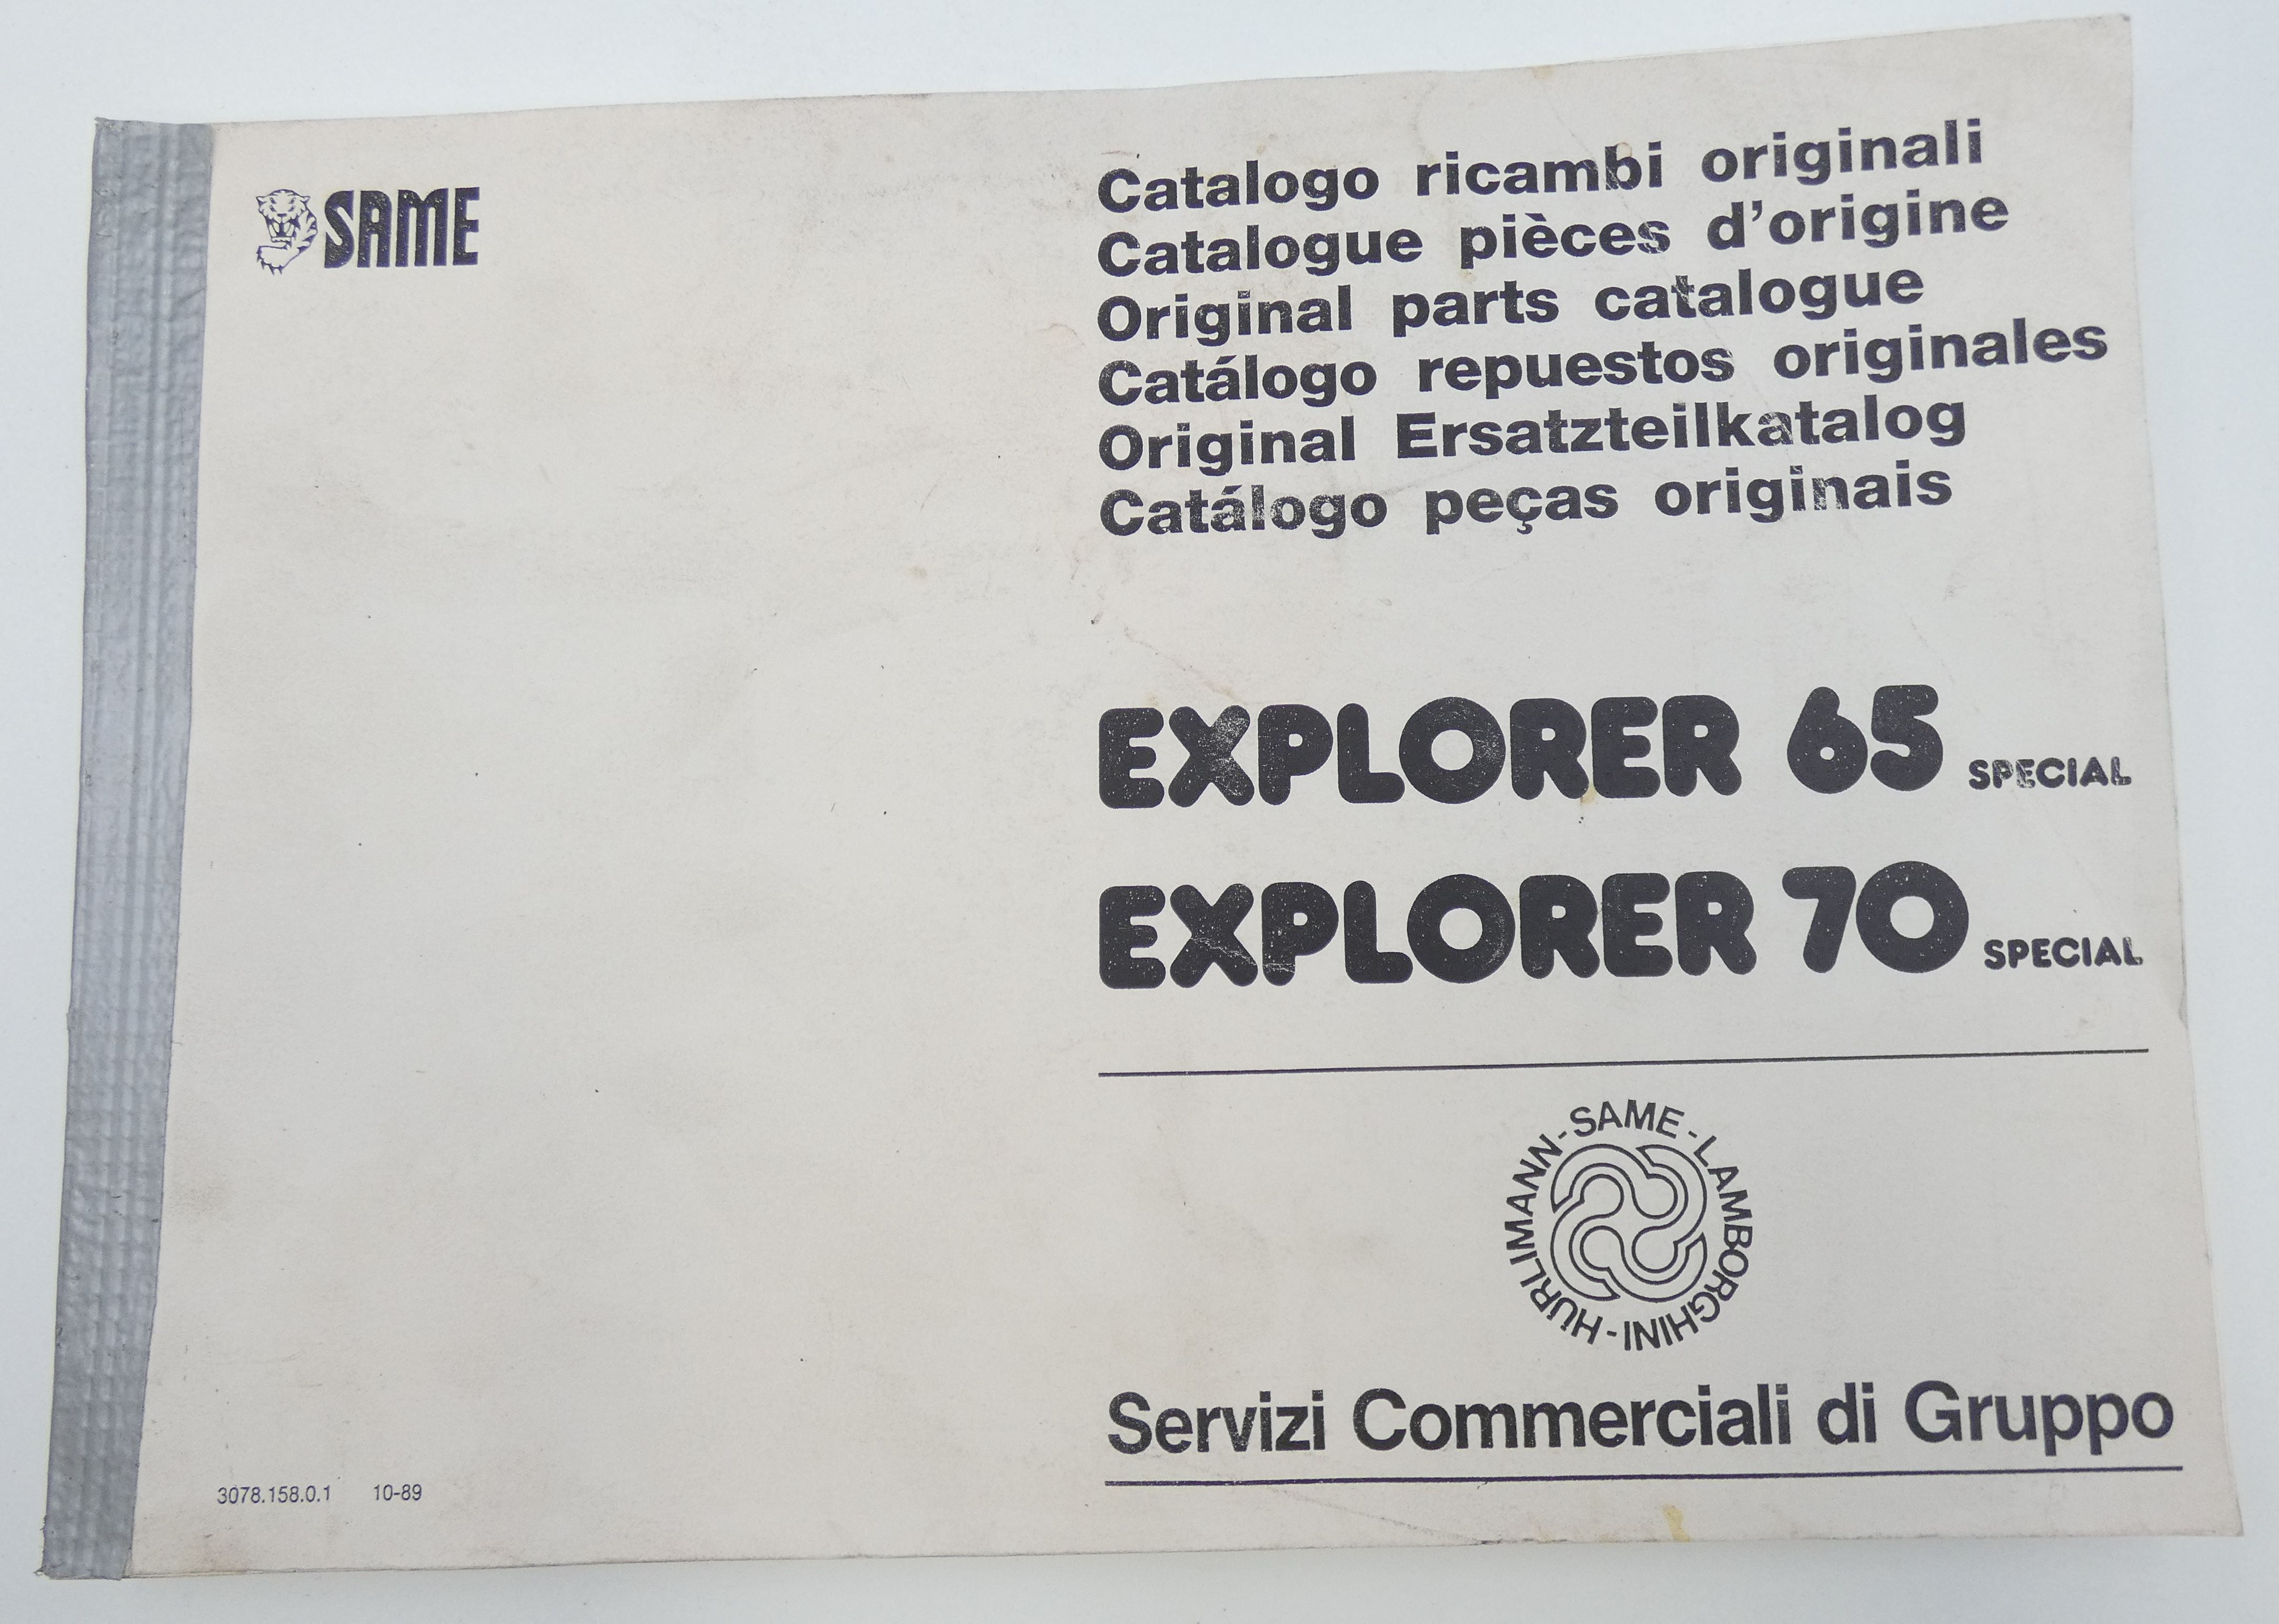 Same Explorer 65 Special and 70 Special original parts catalogue